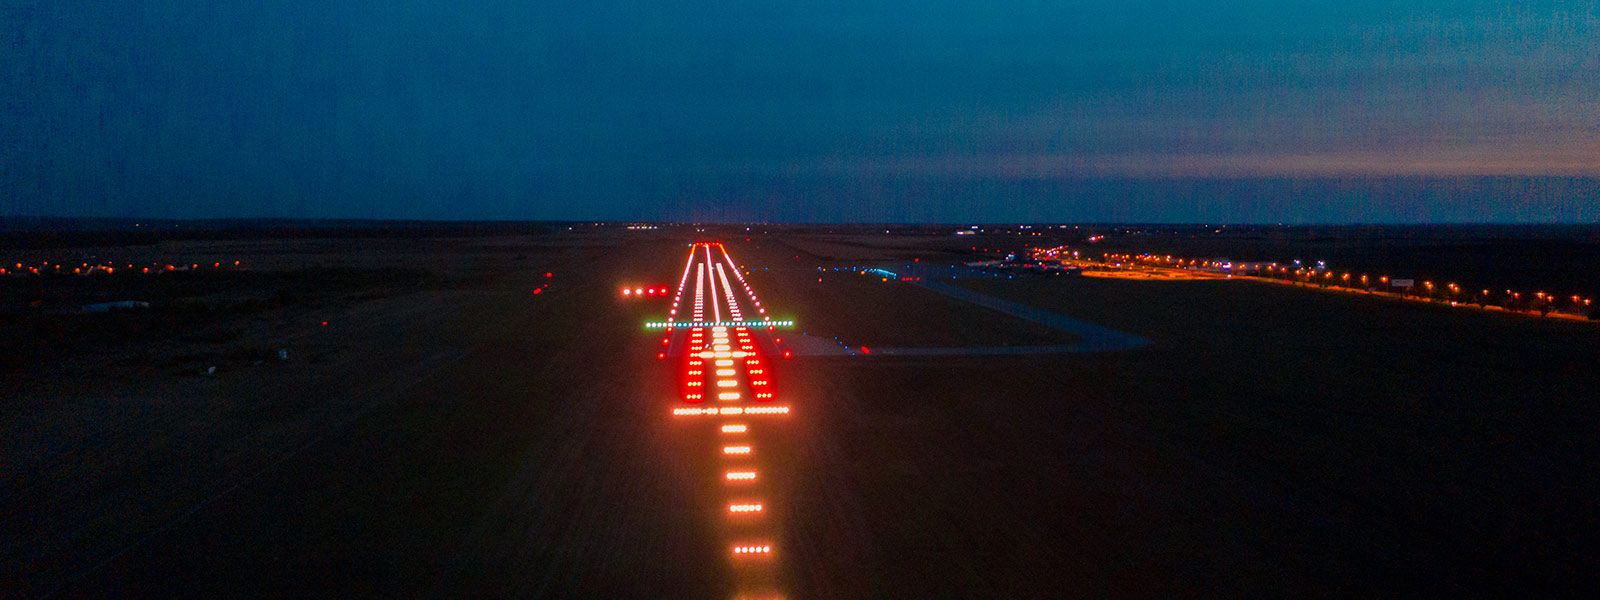 A nagyváradi nemzetközi repülőtér futópályájának fényei (forrás: aeroportoradea.ro)